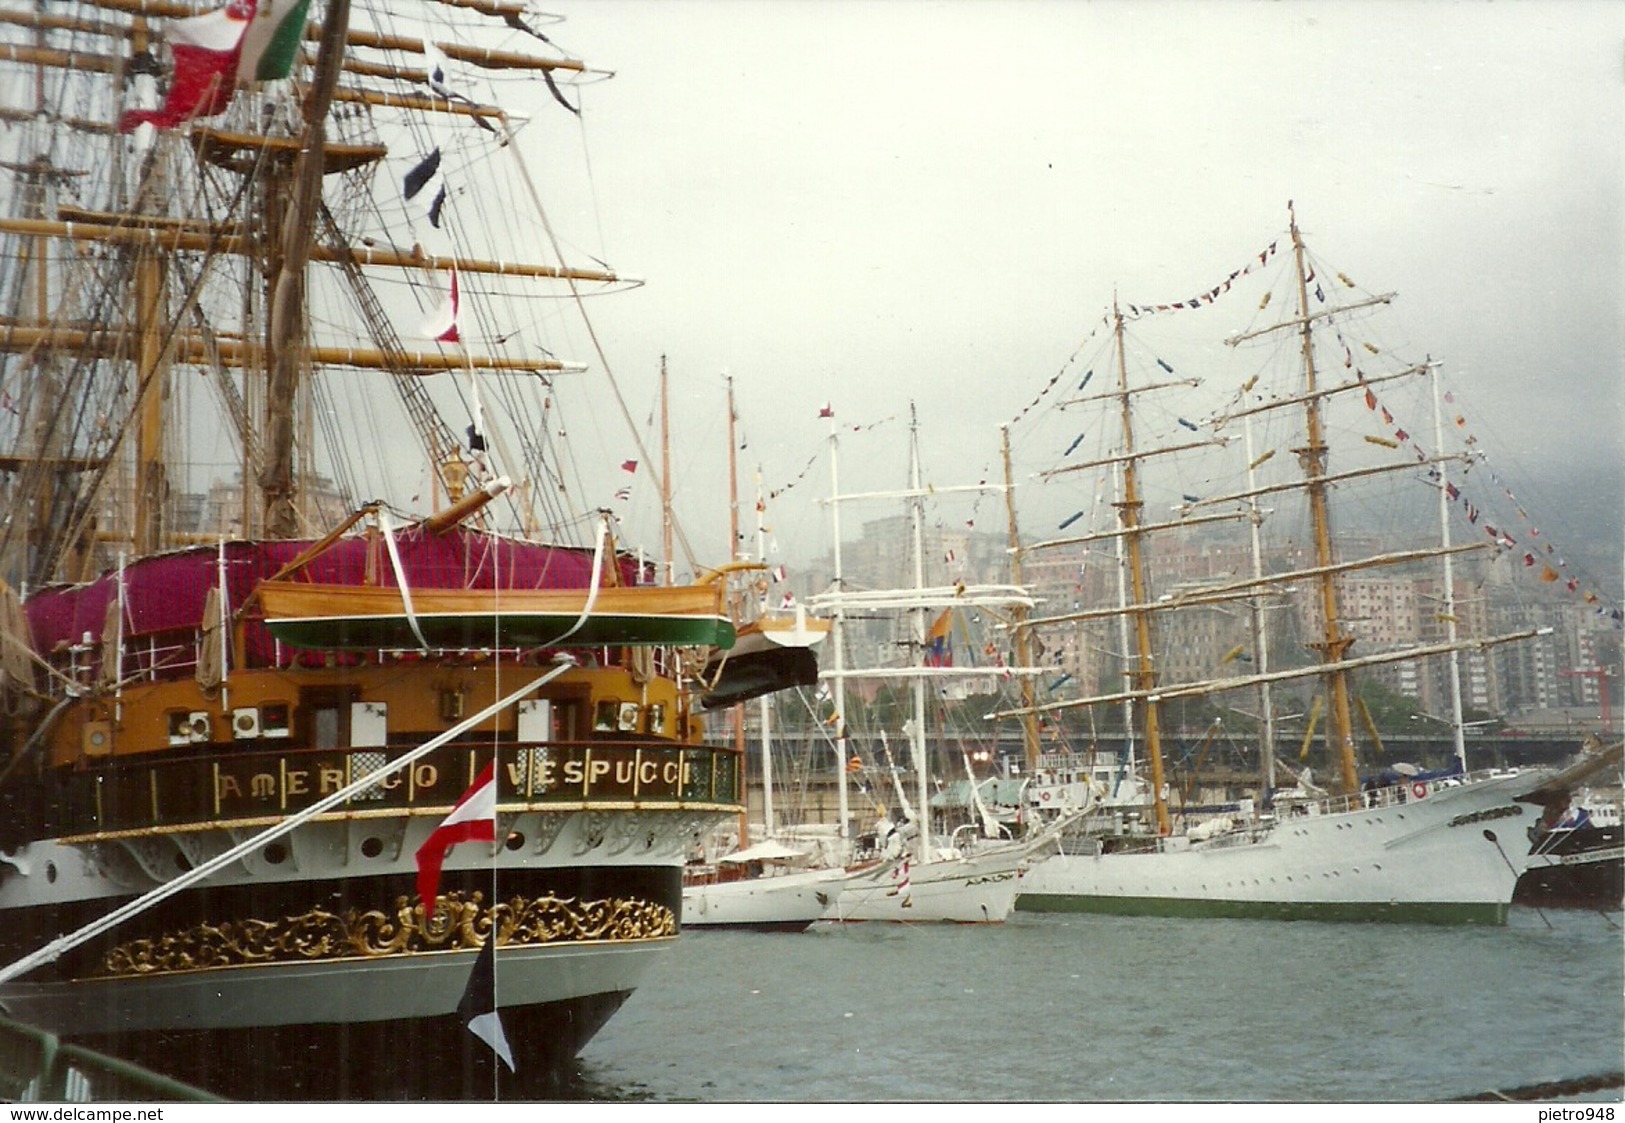 Nave Scuola "Amerigo Vespucci" Ormeggiata nel Porto di Genova e Scorcio del Porto, n. 10 Fotografie